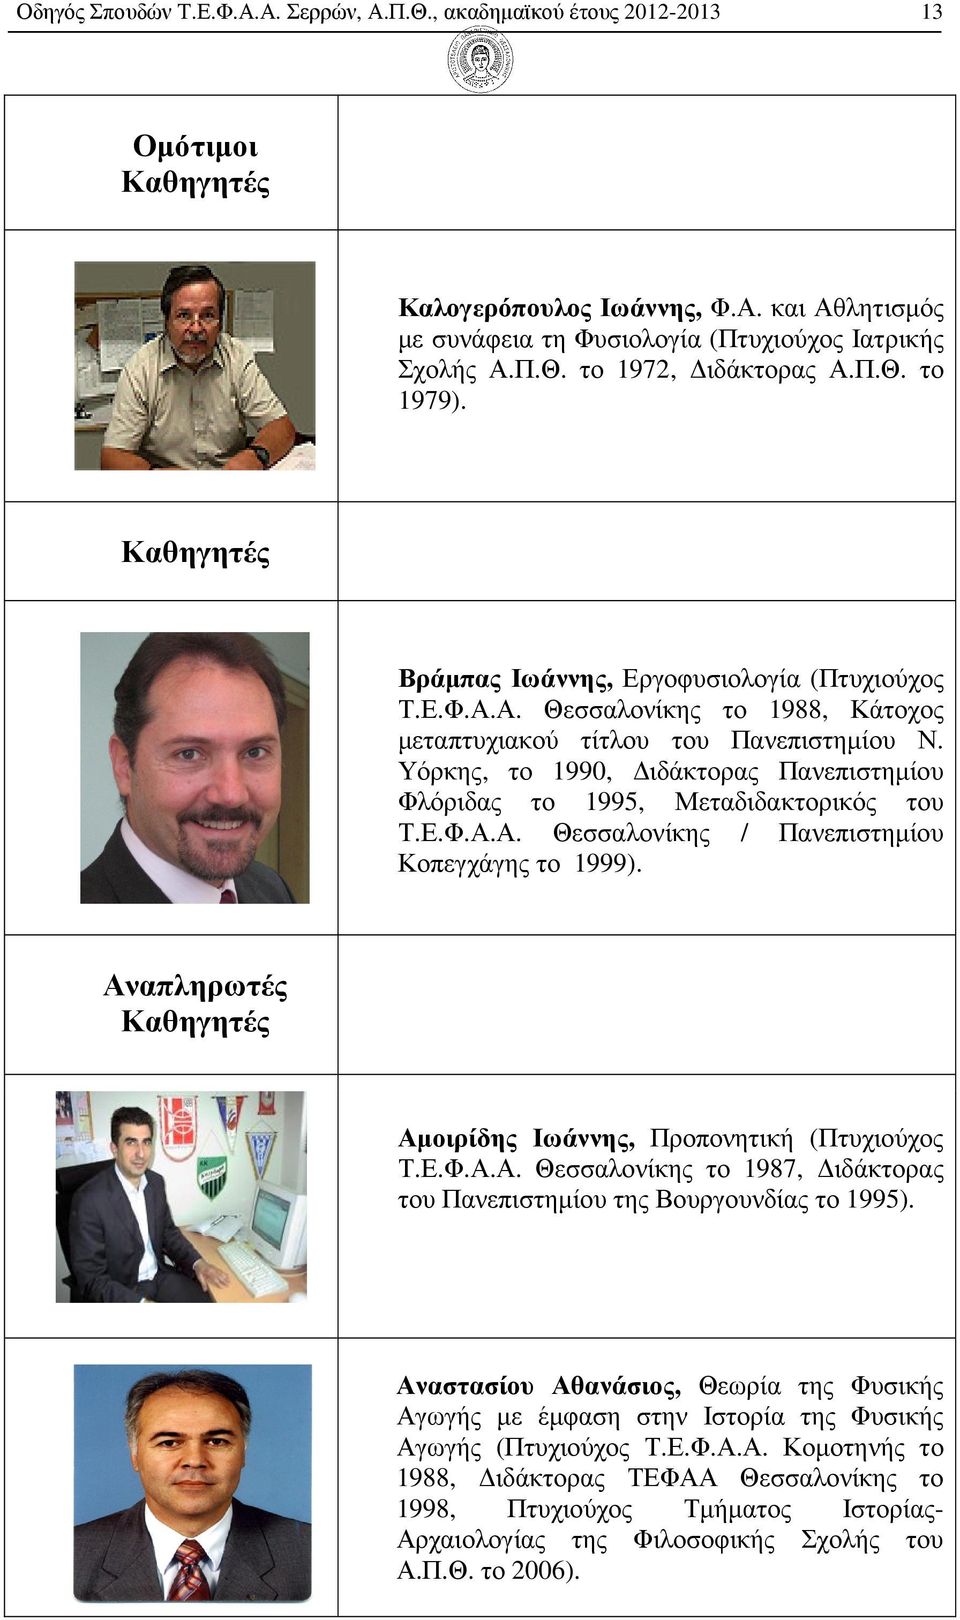 Υόρκης, το 1990, ιδάκτορας Πανεπιστηµίου Φλόριδας το 1995, Μεταδιδακτορικός του Τ.Ε.Φ.Α.Α. Θεσσαλονίκης / Πανεπιστηµίου Κοπεγχάγης το 1999).